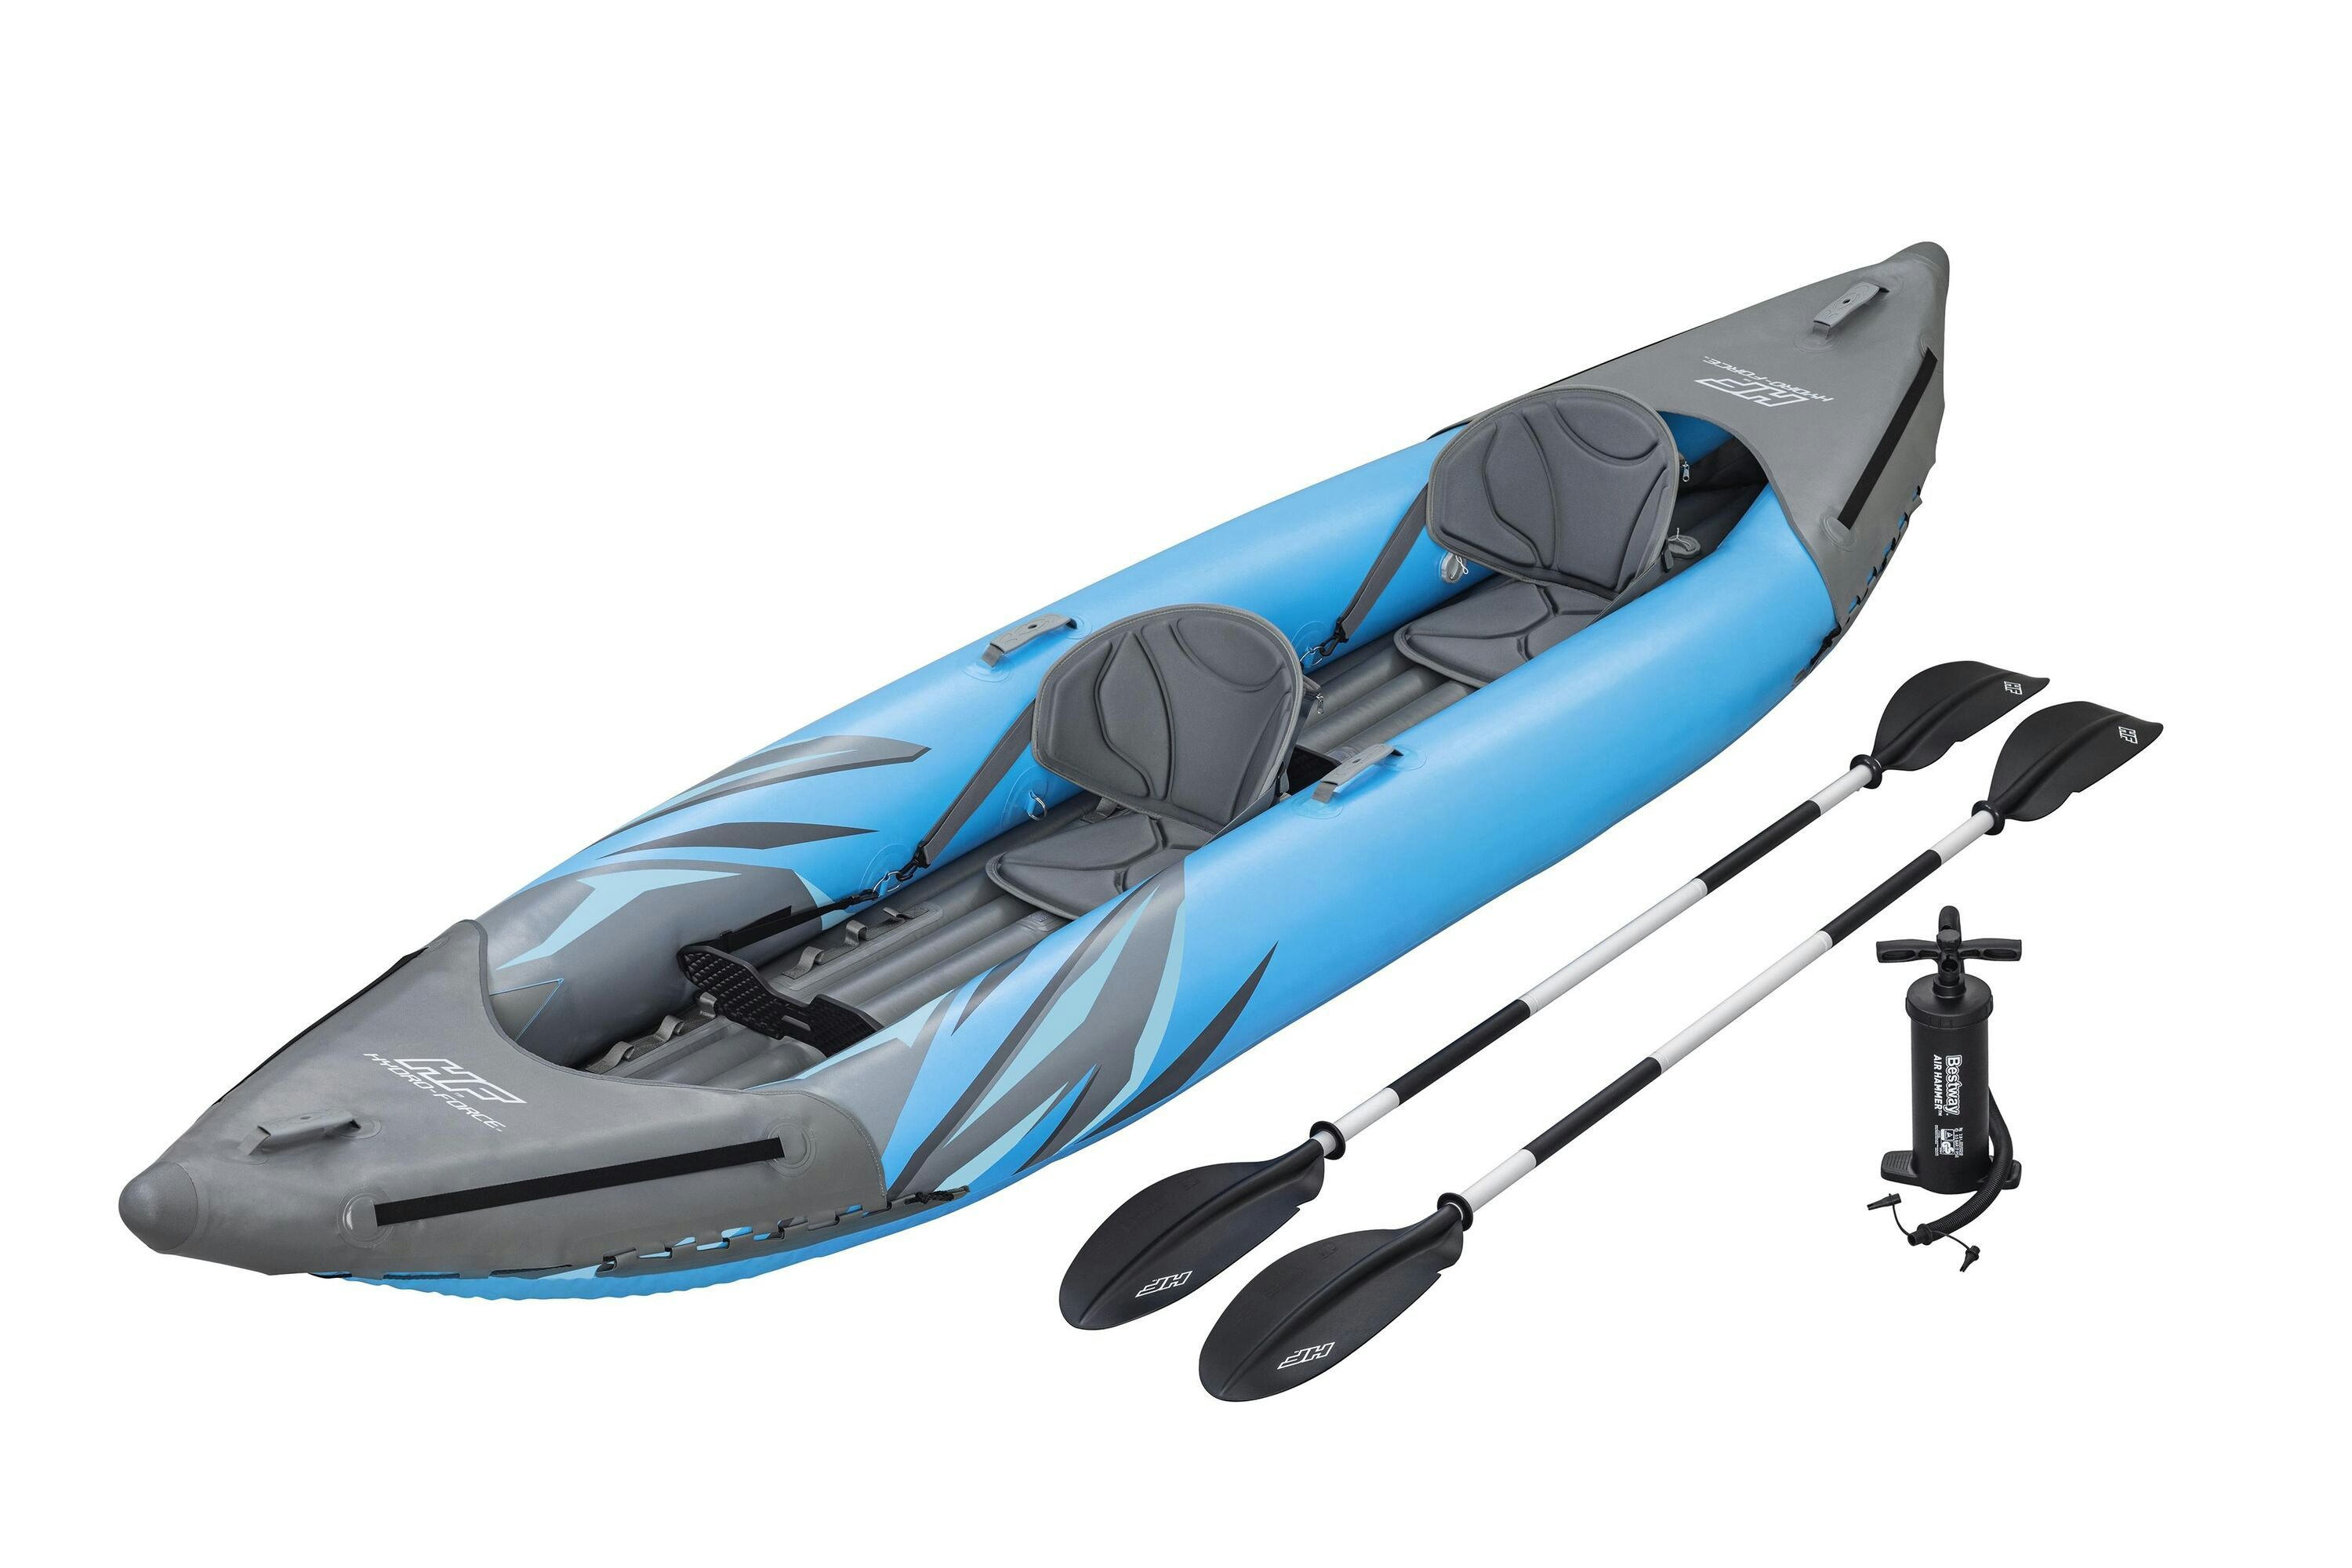 Sports d'eau Kayak gonflable Hydro-Force™ Surge Elite™ 382 x 94 x 42 cm 2 personnes, 2 repose-pieds, pagaie, sac de transport, pompe Bestway 1